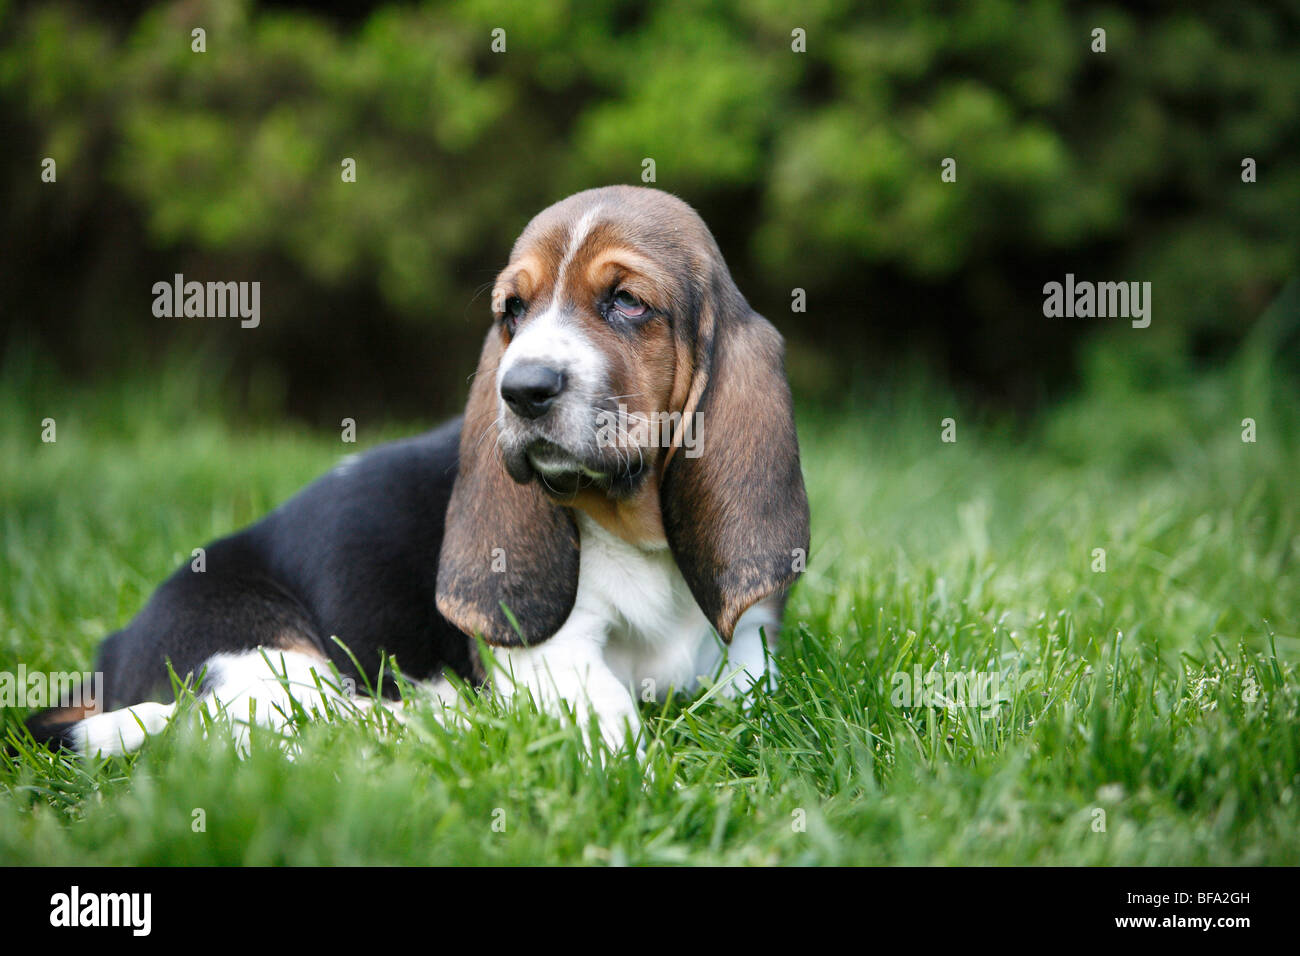 Basset Hound (Canis lupus familiaris) f., cachorro sentado en una pradera, Alemania Foto de stock